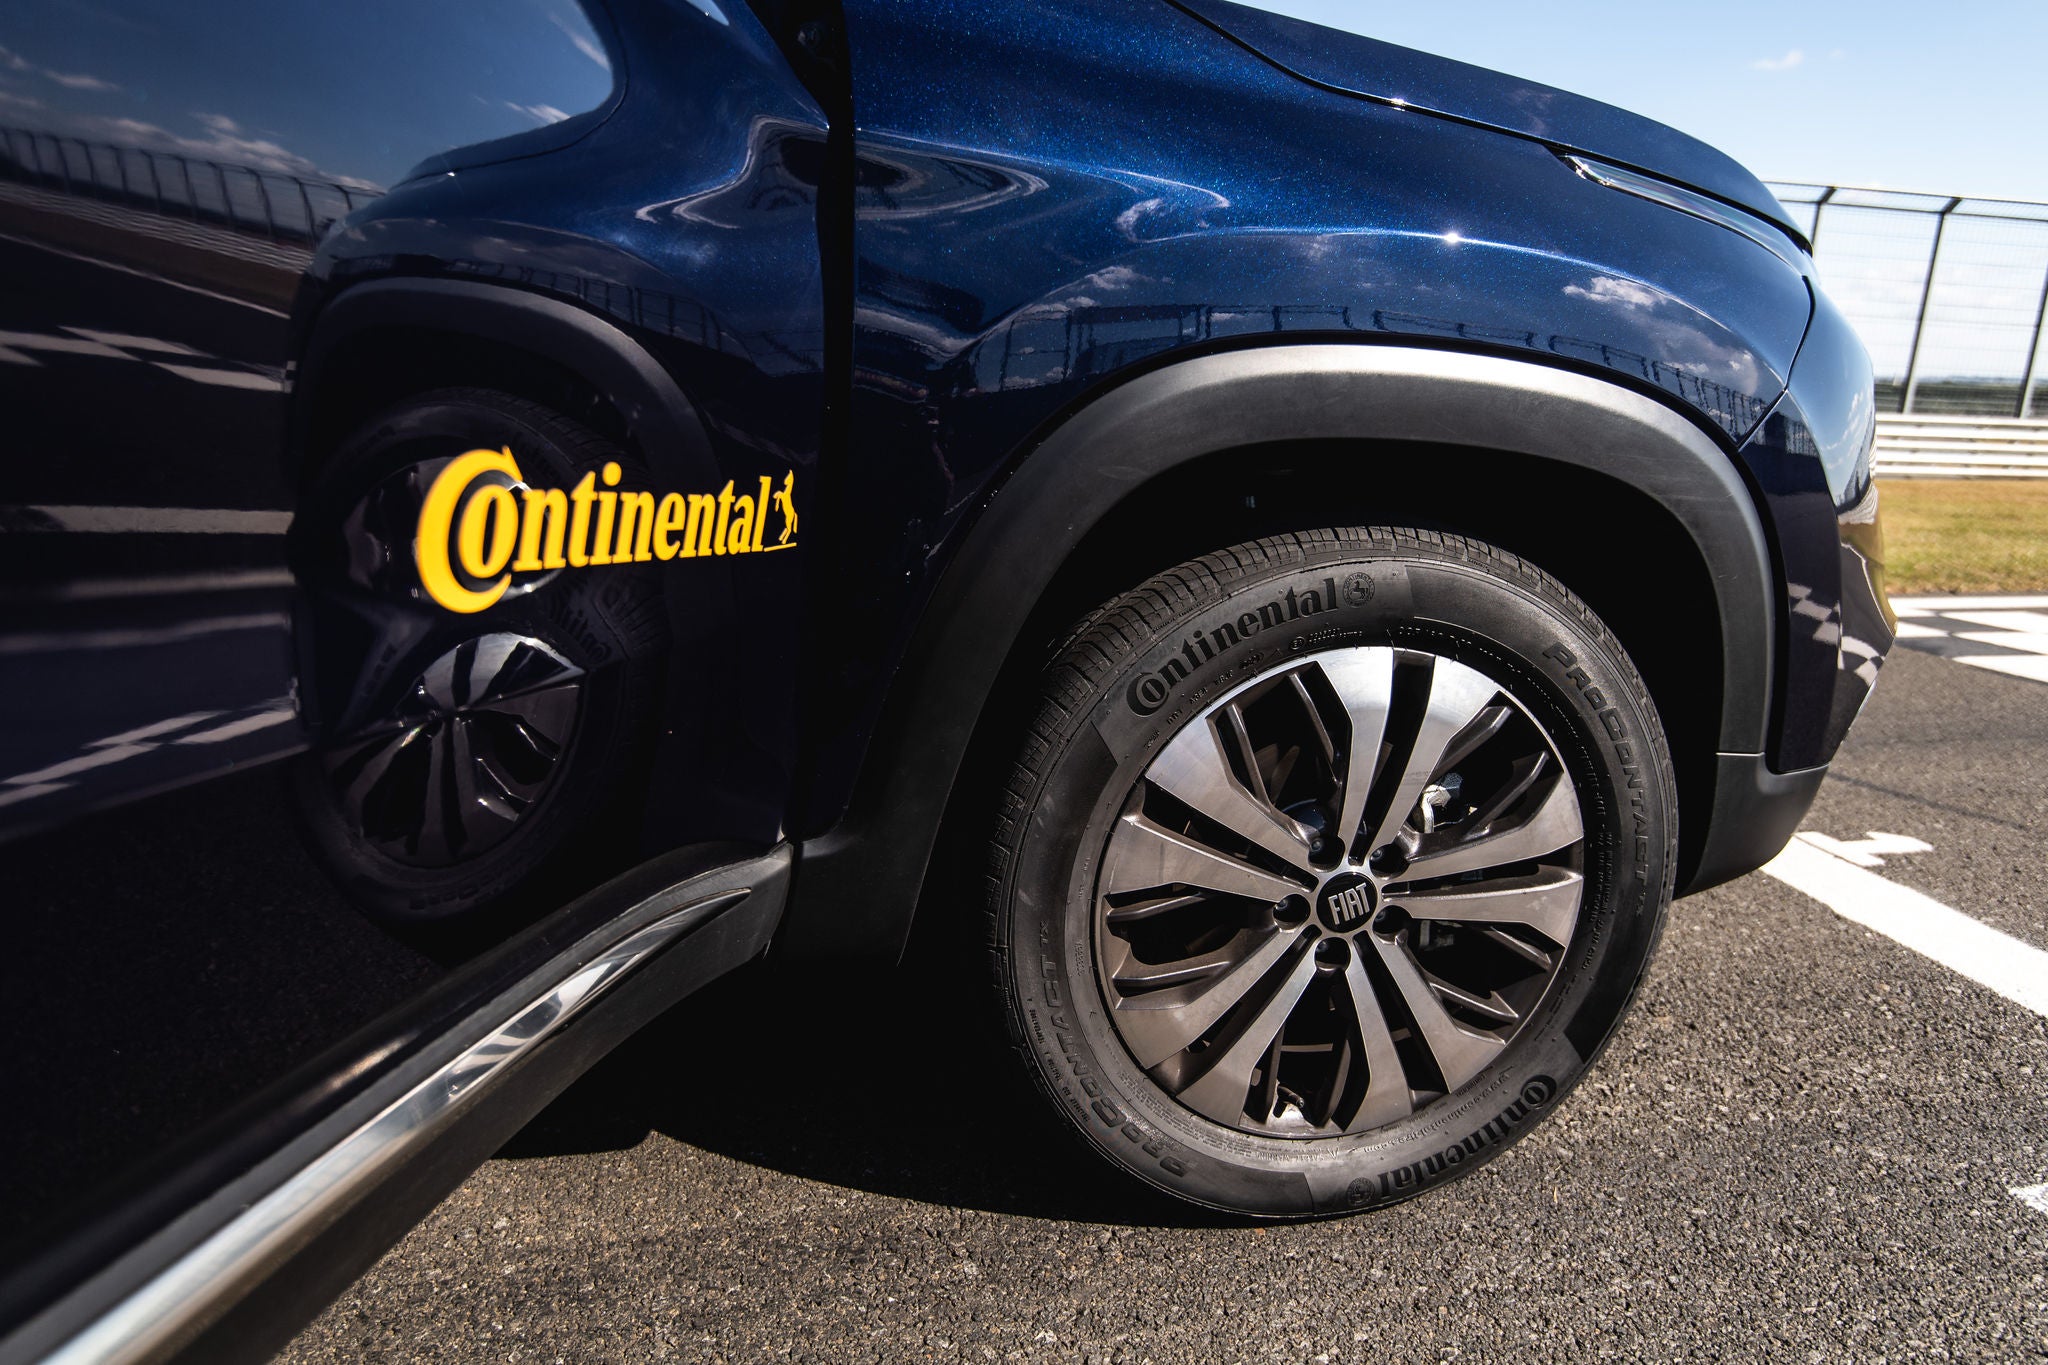 (foto lateral de caminhonete Toro azul calçada com pneu Continental)